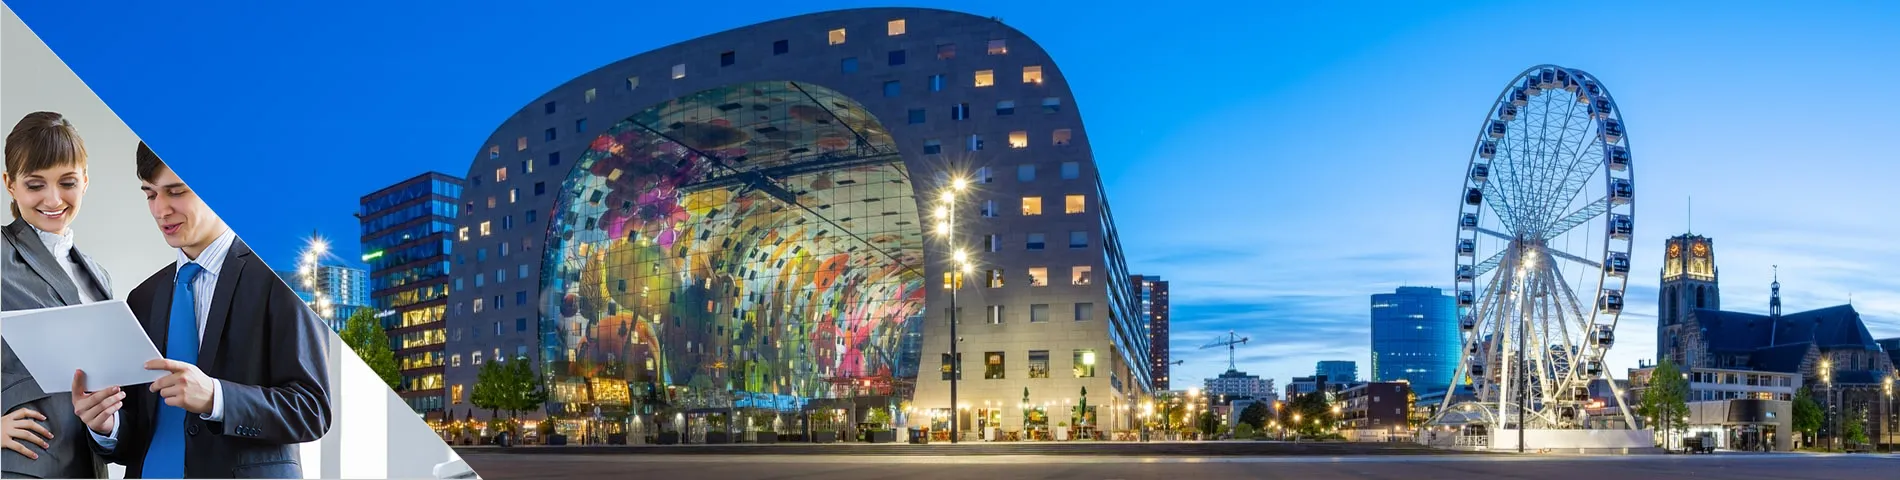 Rotterdam - Egyéni üzleti